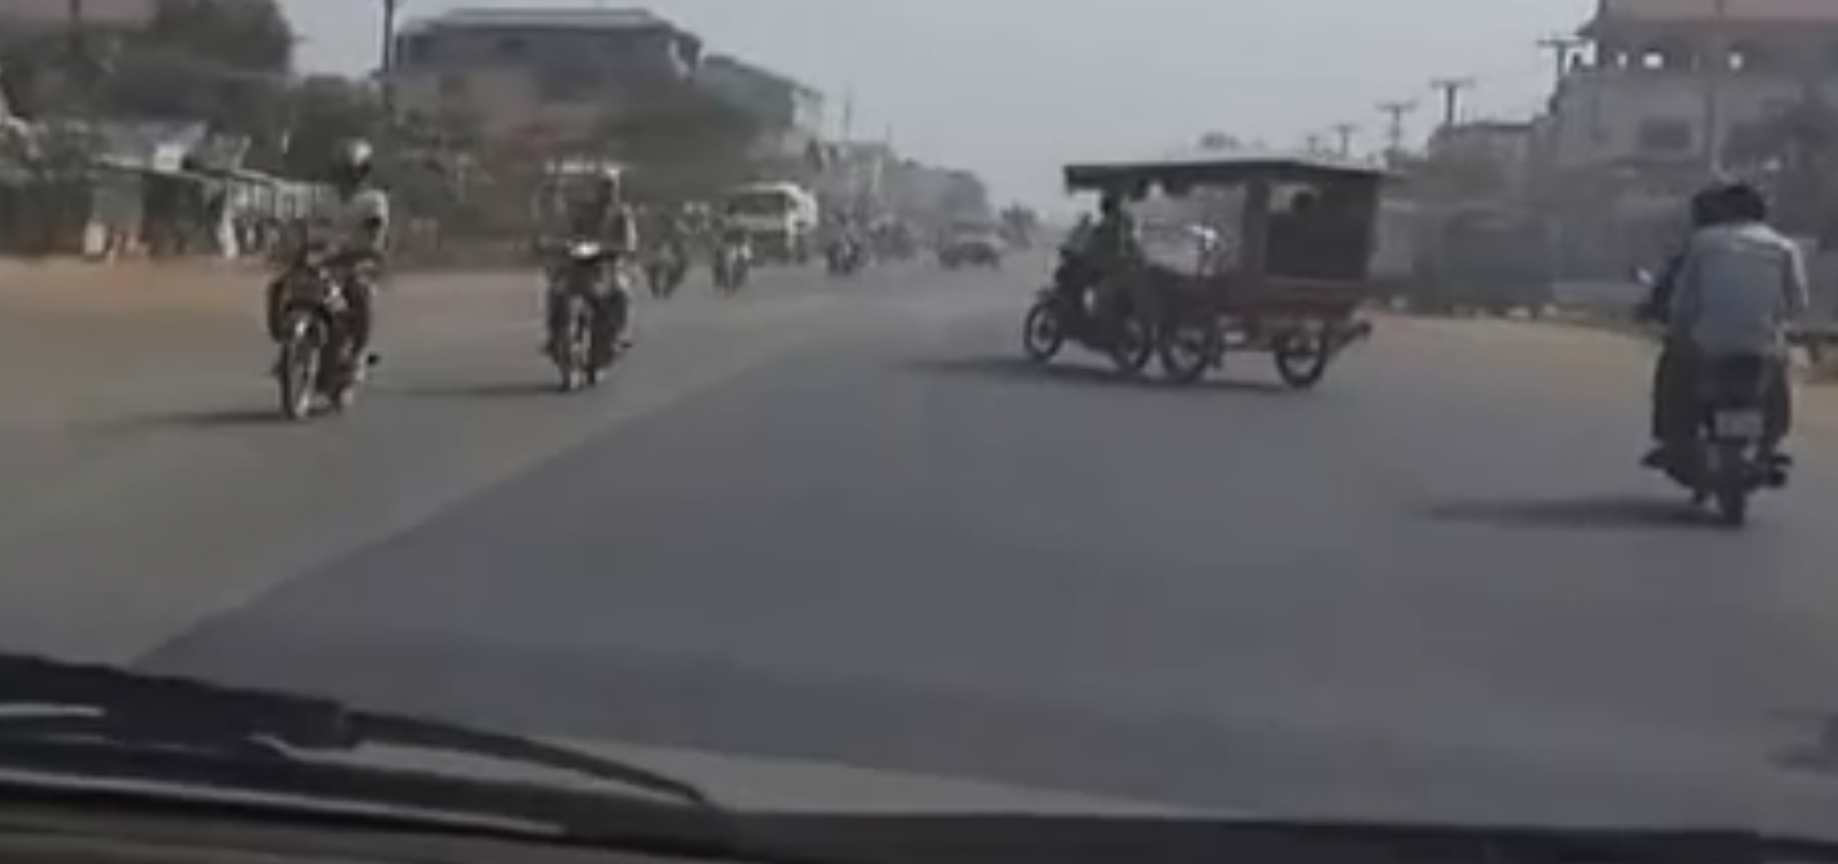 Életveszélyes közlekedés - csak erős idegzetűeknek! (Videó)